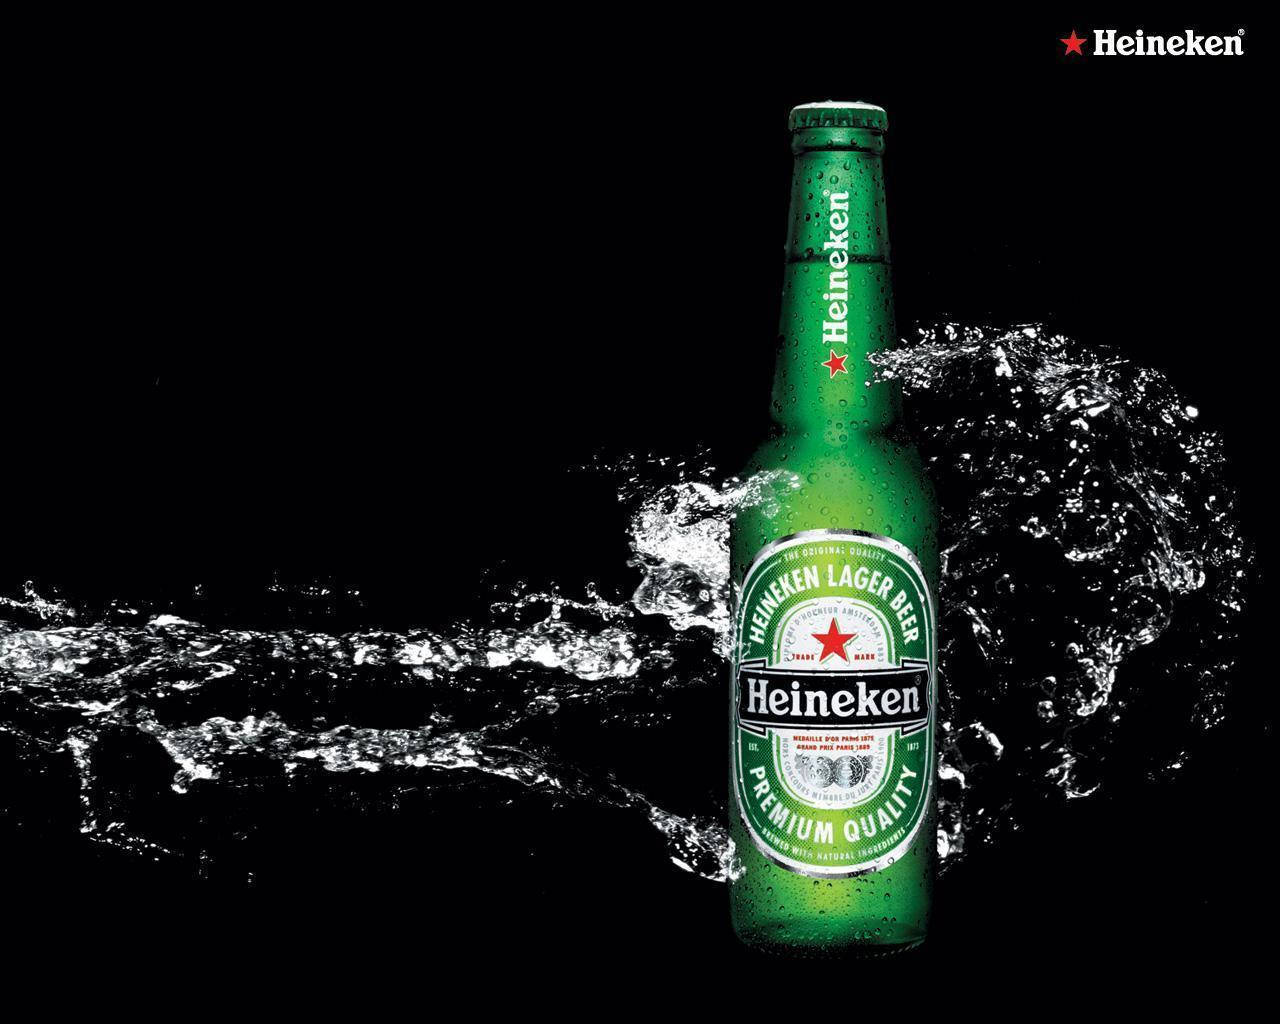 Heinekencerveja Lager Com Efeito De Água Salpicando Papel de Parede